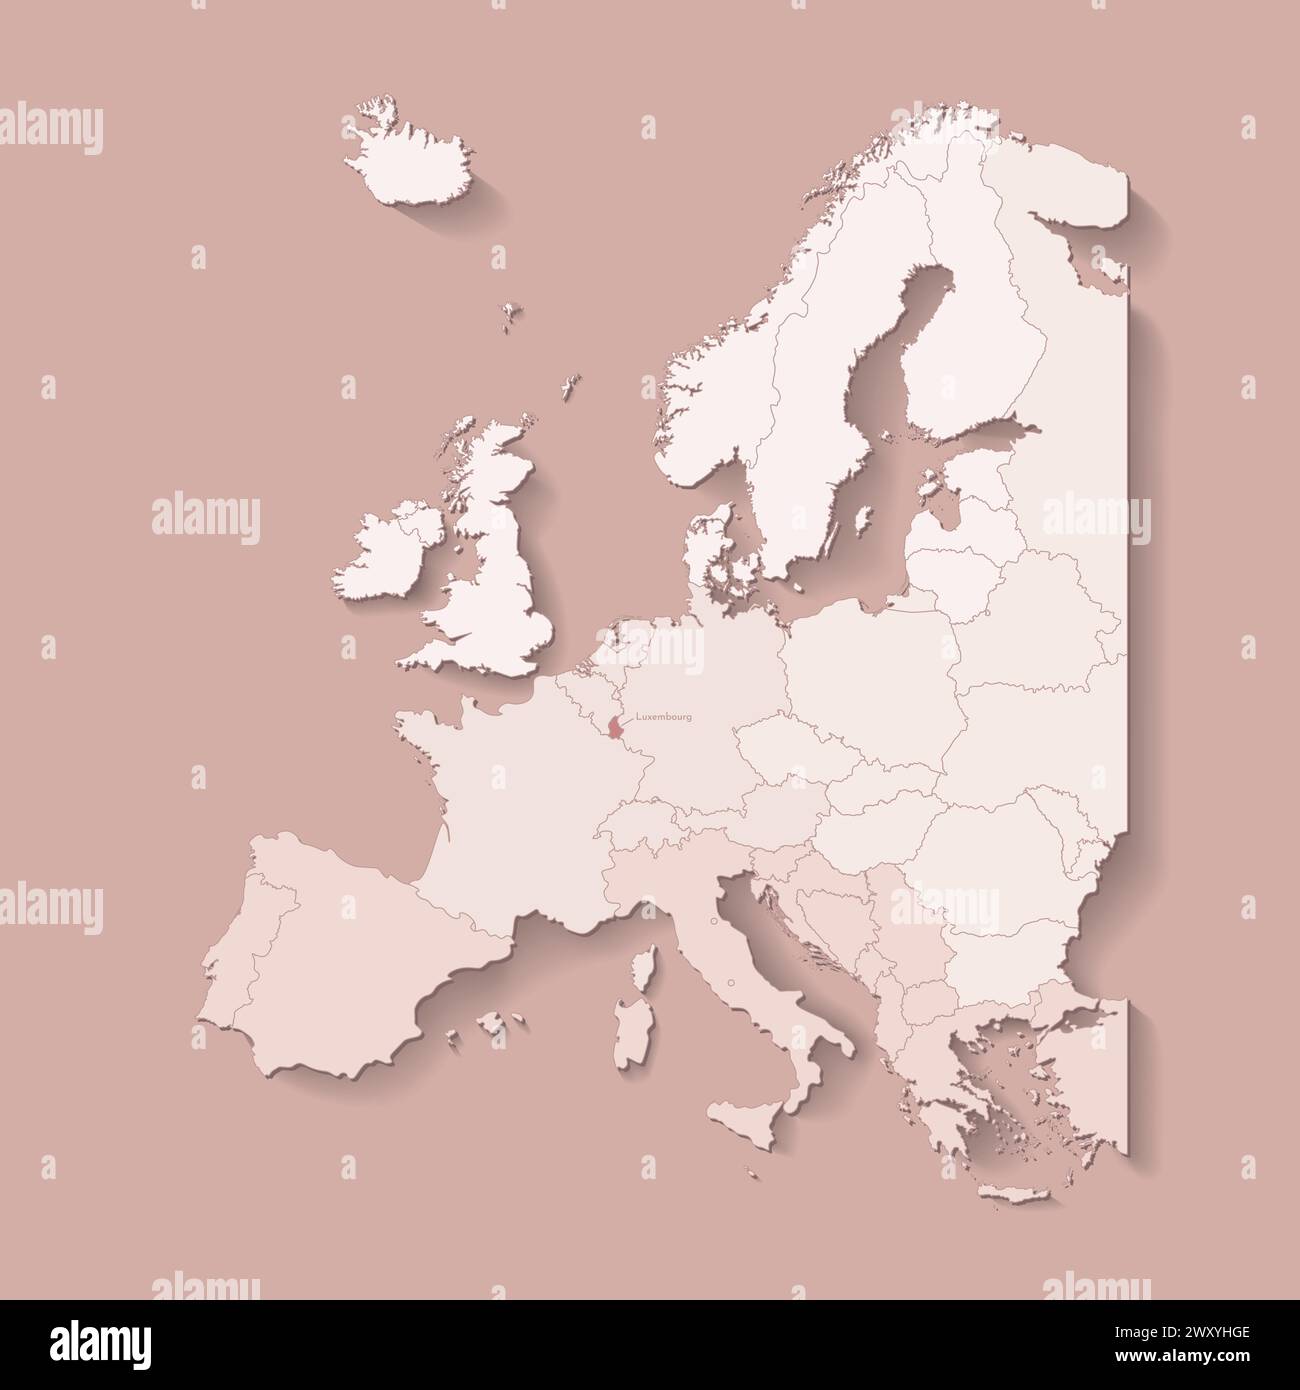 Illustrazione vettoriale con terra europea con confini di stati e paese contrassegnato Lussemburgo. Mappa politica di colore marrone con occidentale, meridionale e così via Illustrazione Vettoriale